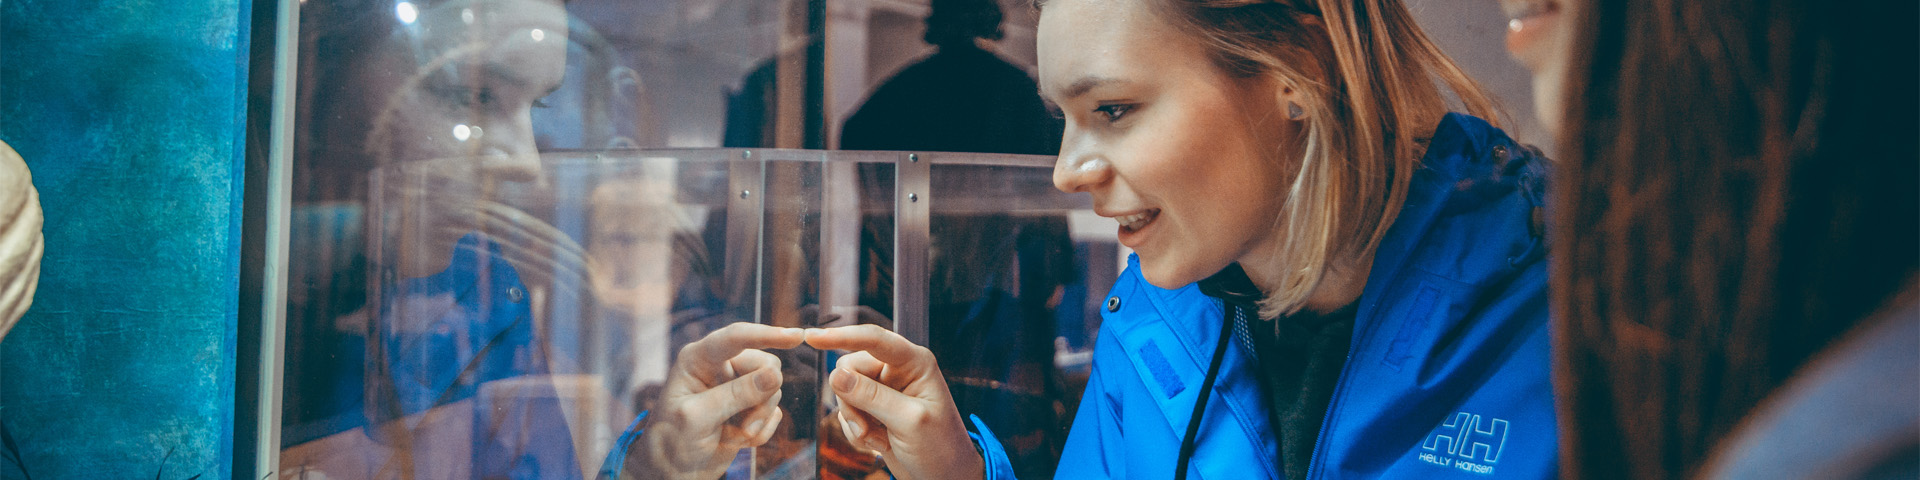 Deux individus regardent attentivement une exposition en verre. L'un d'eux pointe du doigt quelque chose dans l'exposition.